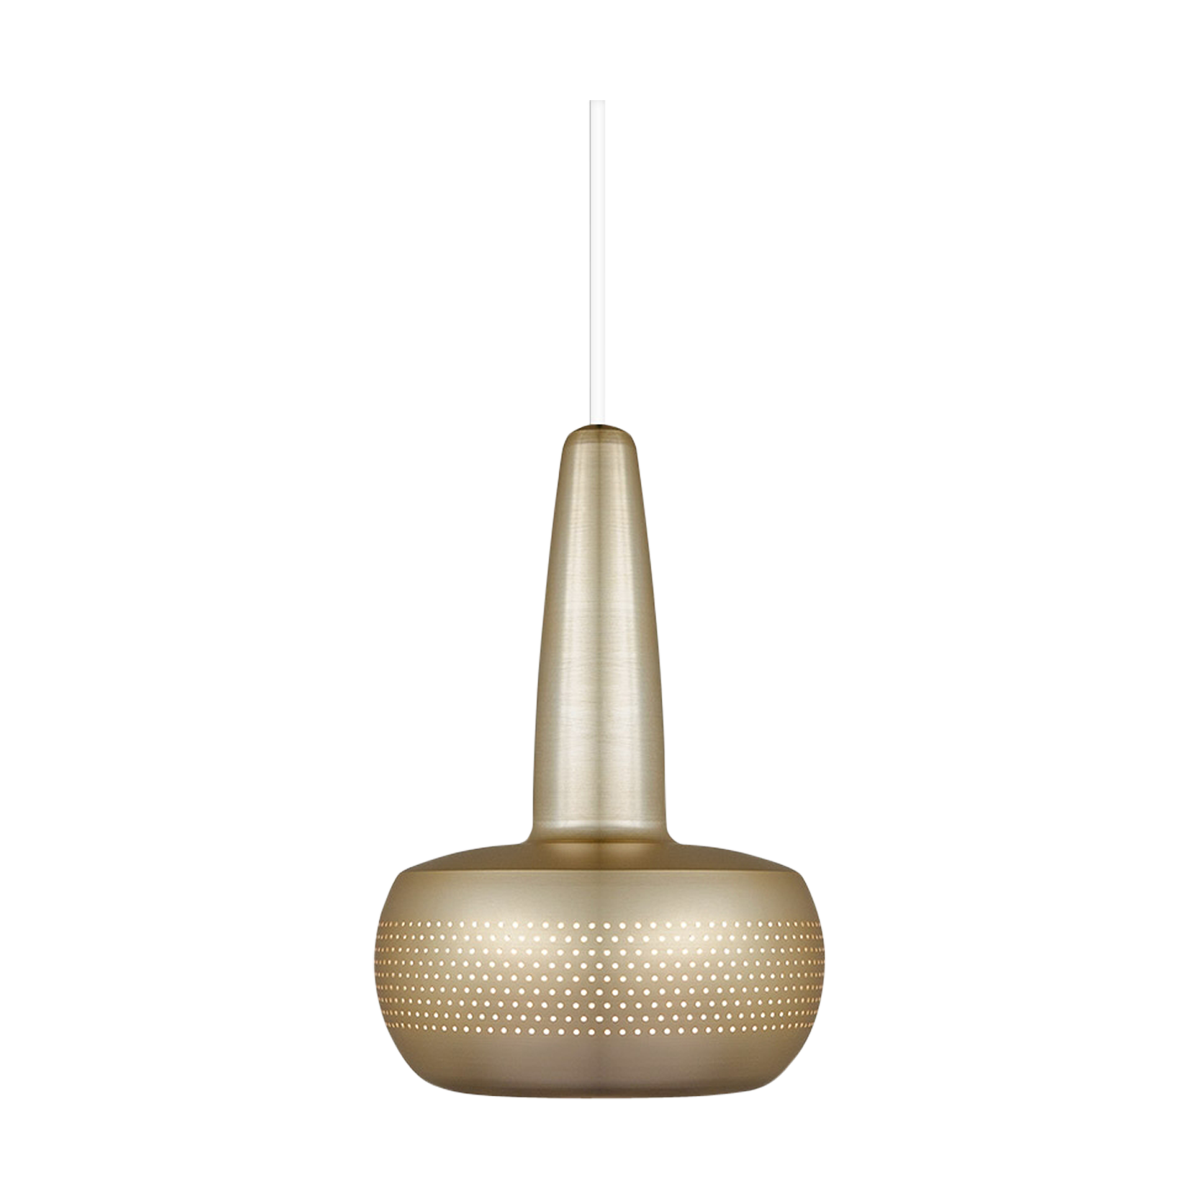 Clava hanglamp brushed brass - met koordset wit - Ø 21,5 cm